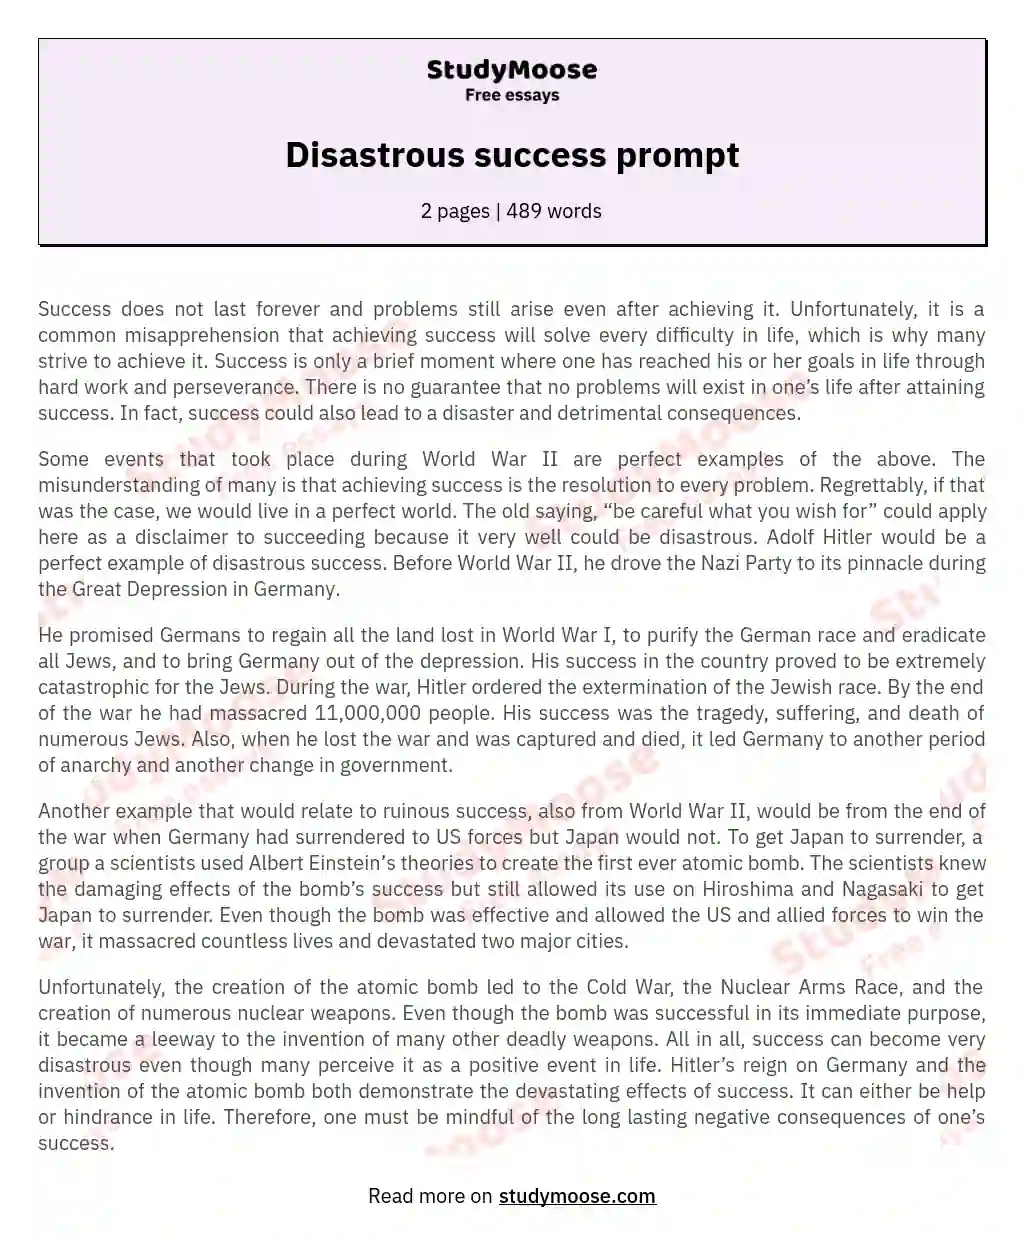 Disastrous success prompt essay